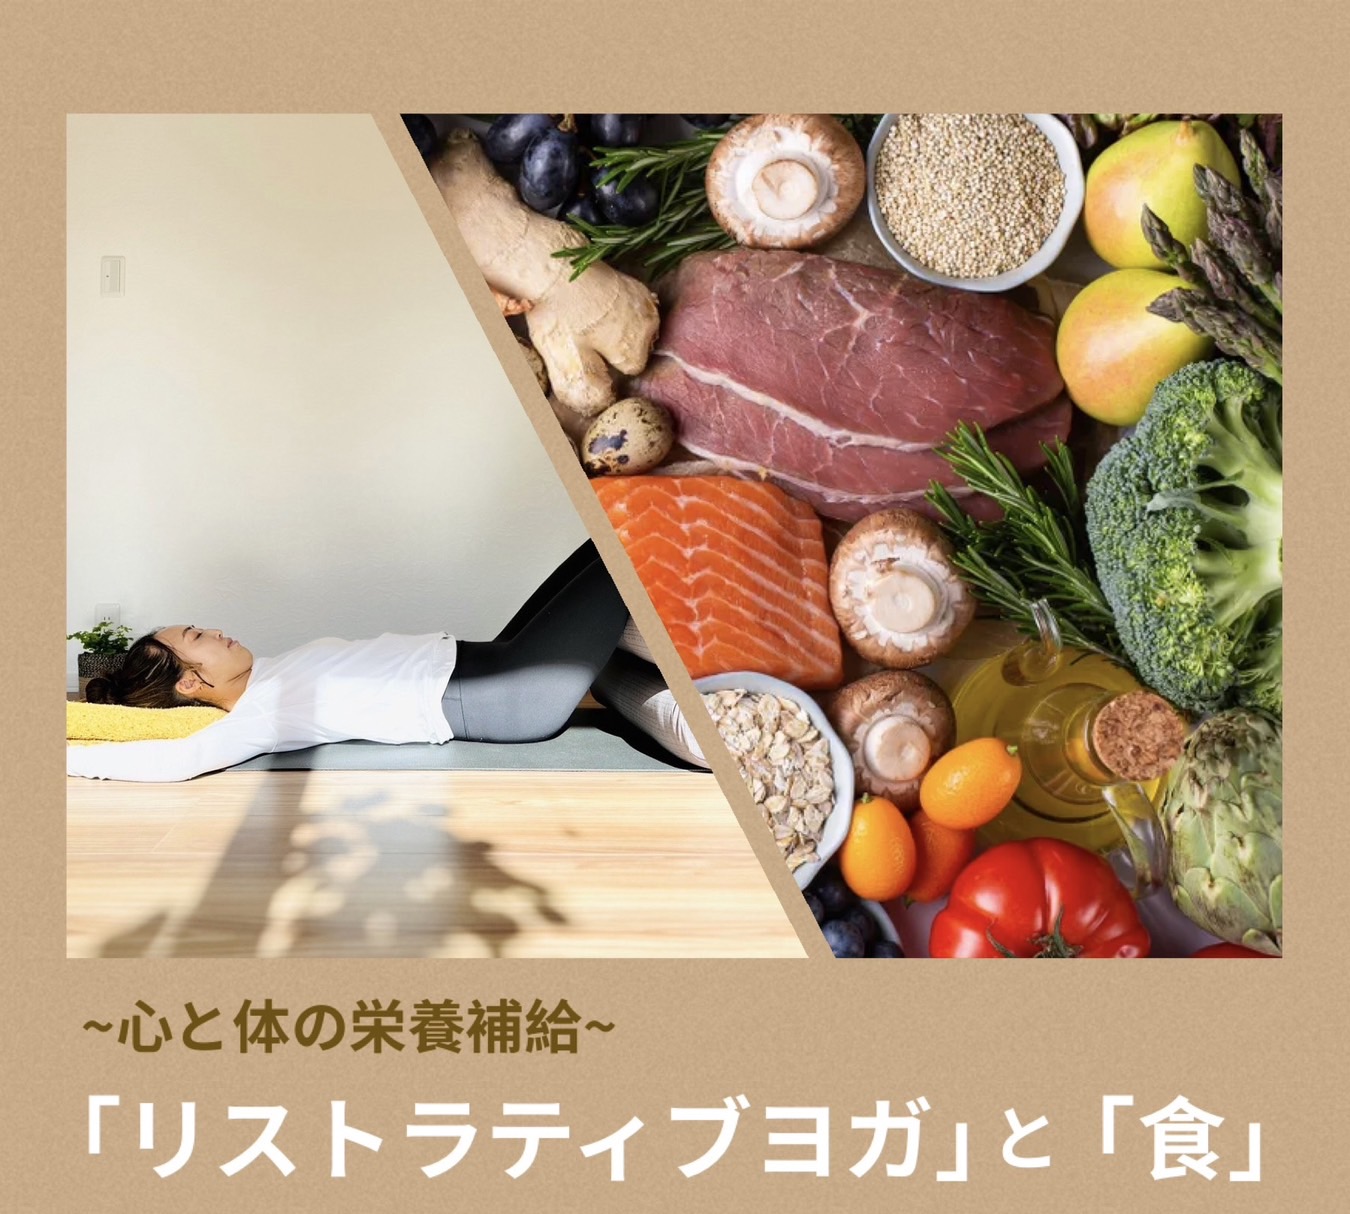 【ソラヨガ六甲道】ワークショップのお知らせ「ヨガと食」